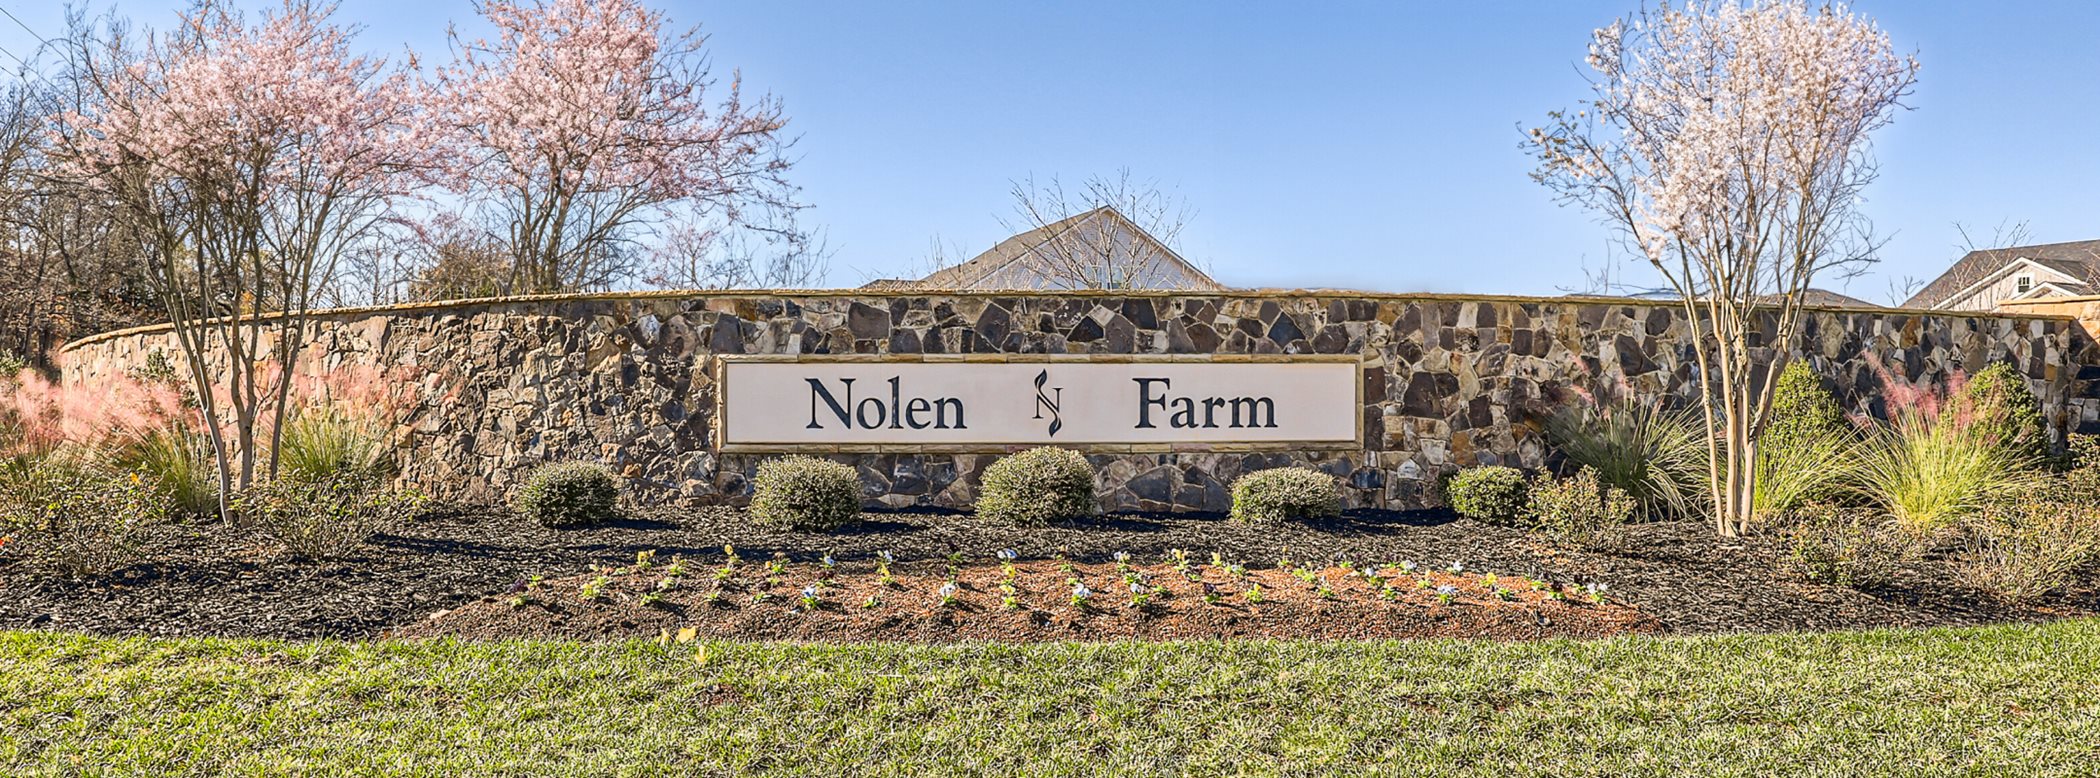 Nolen Farm